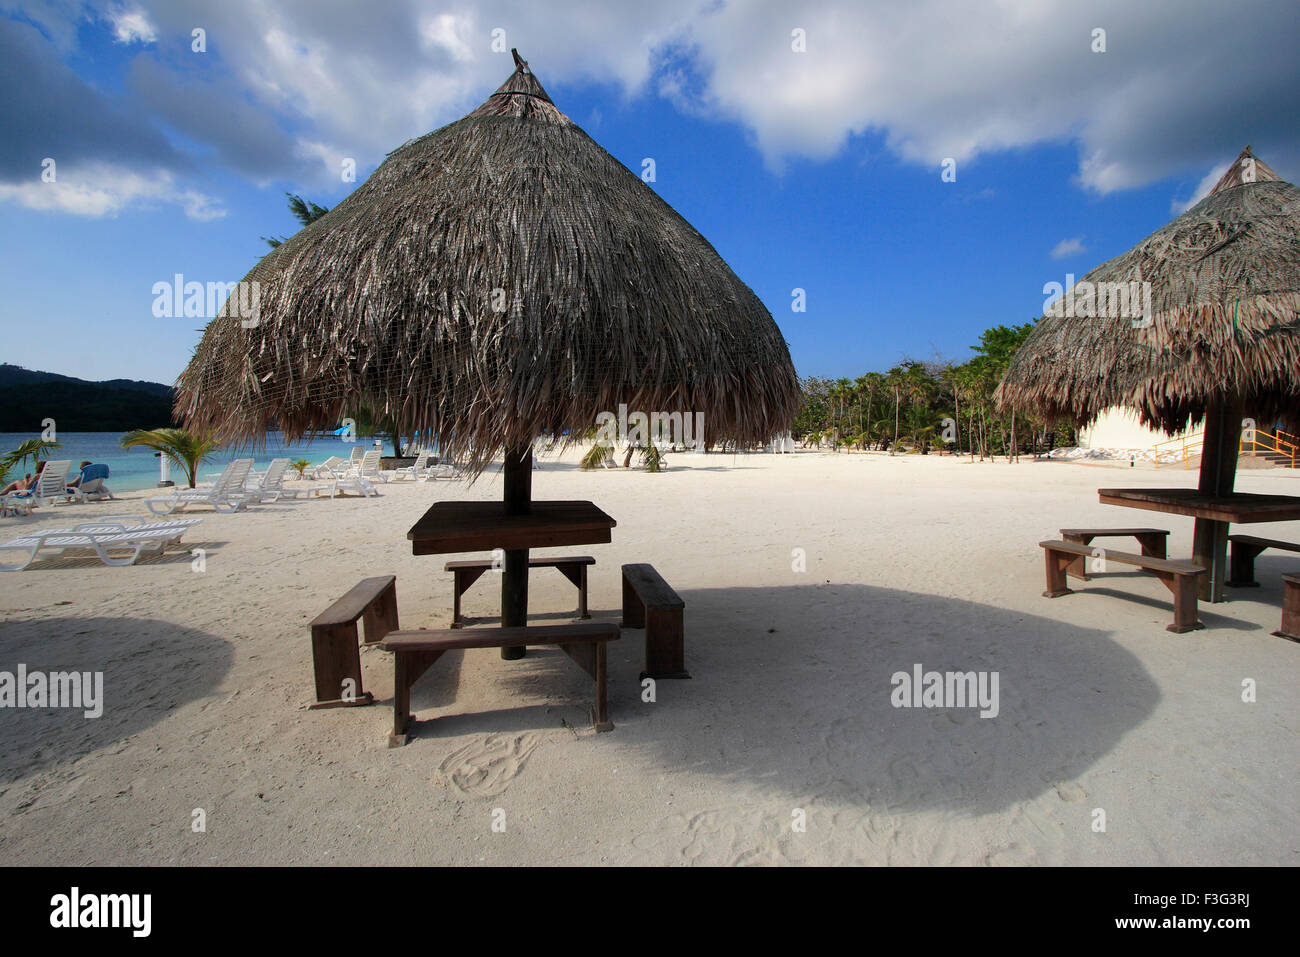 Beach umbrella with chairs, Roatan Island, Ruatan, Rattan, Honduras, Caribbean, Central America Stock Photo